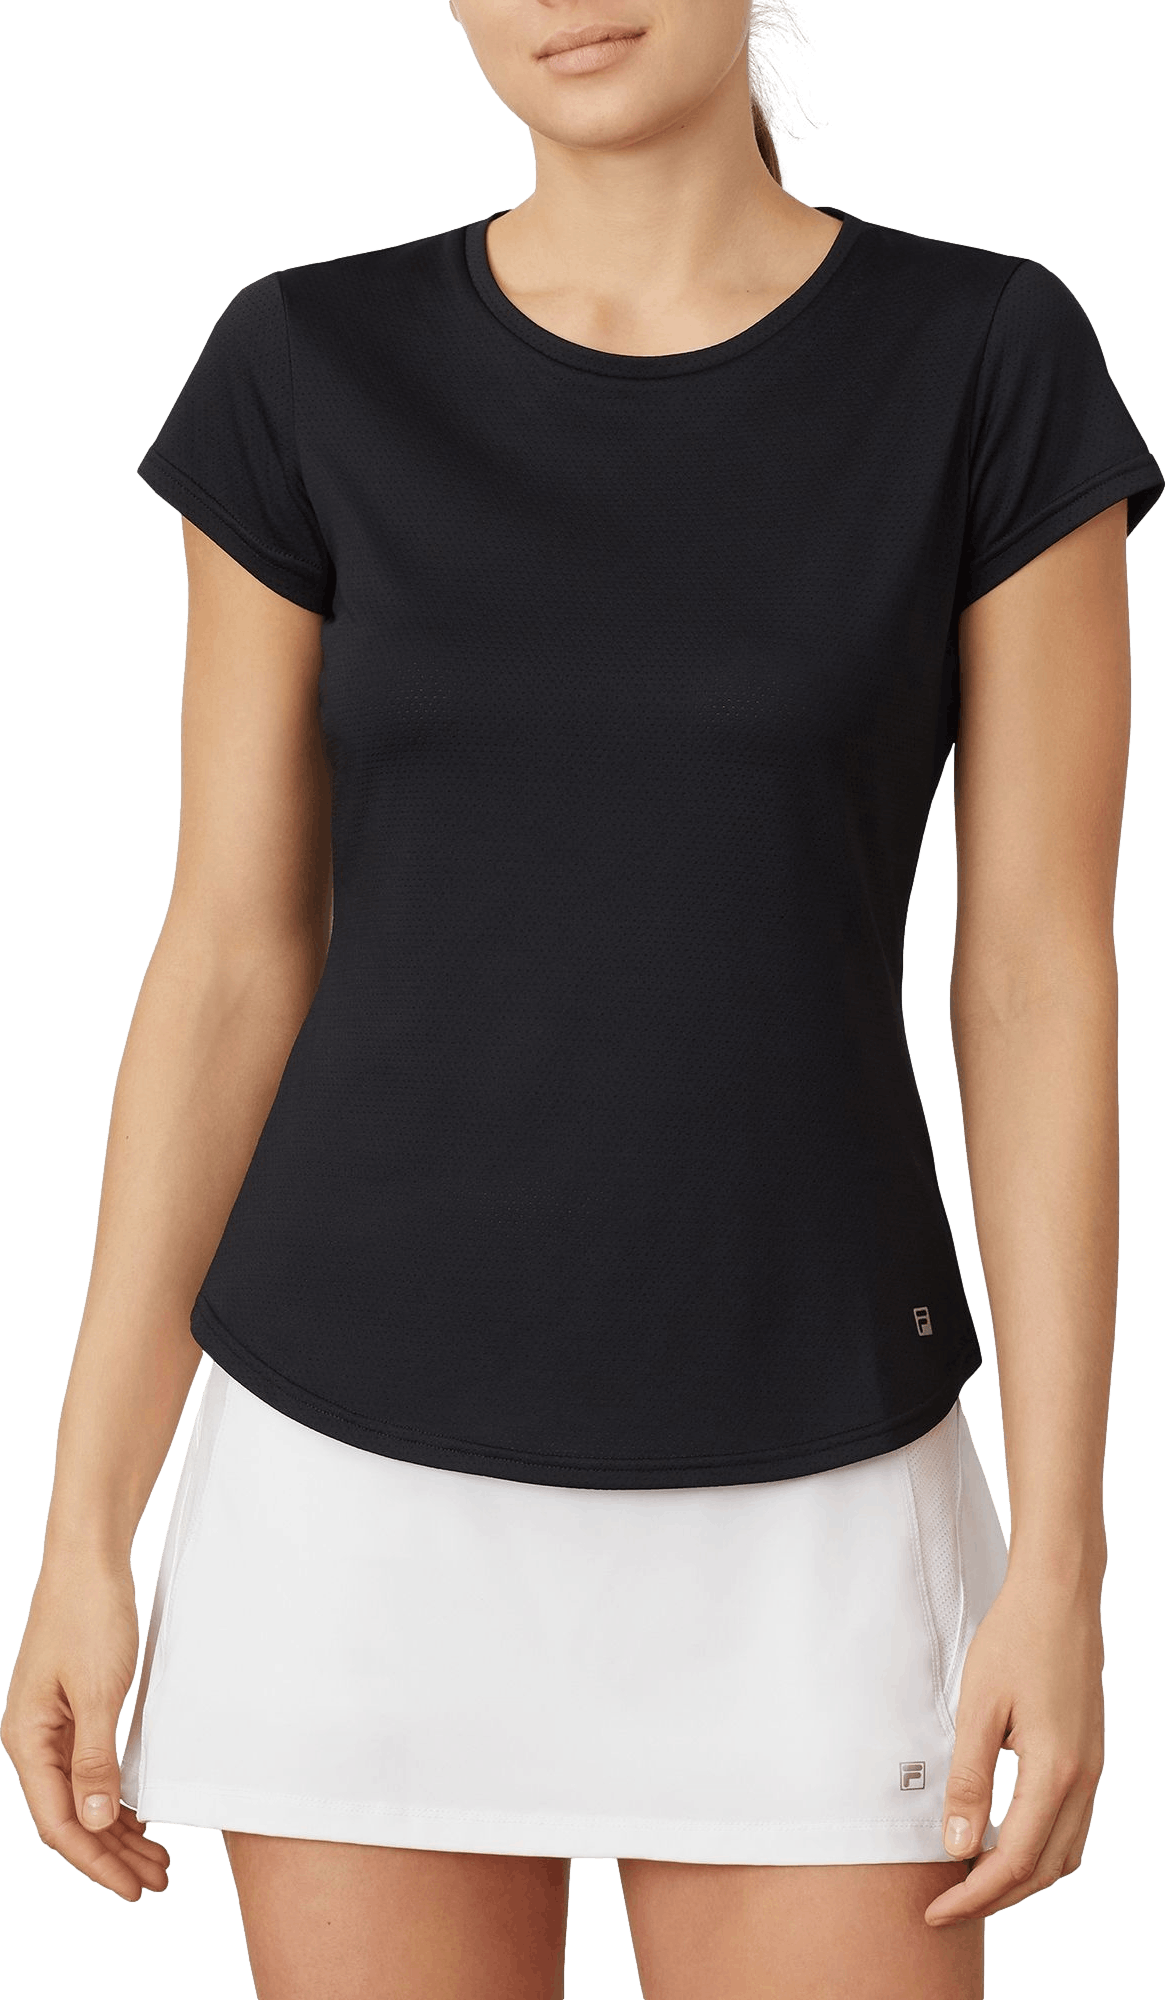 Fila Women's Essentials Tennis Shirt